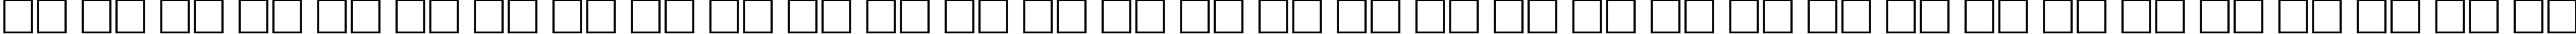 Пример написания русского алфавита шрифтом font128